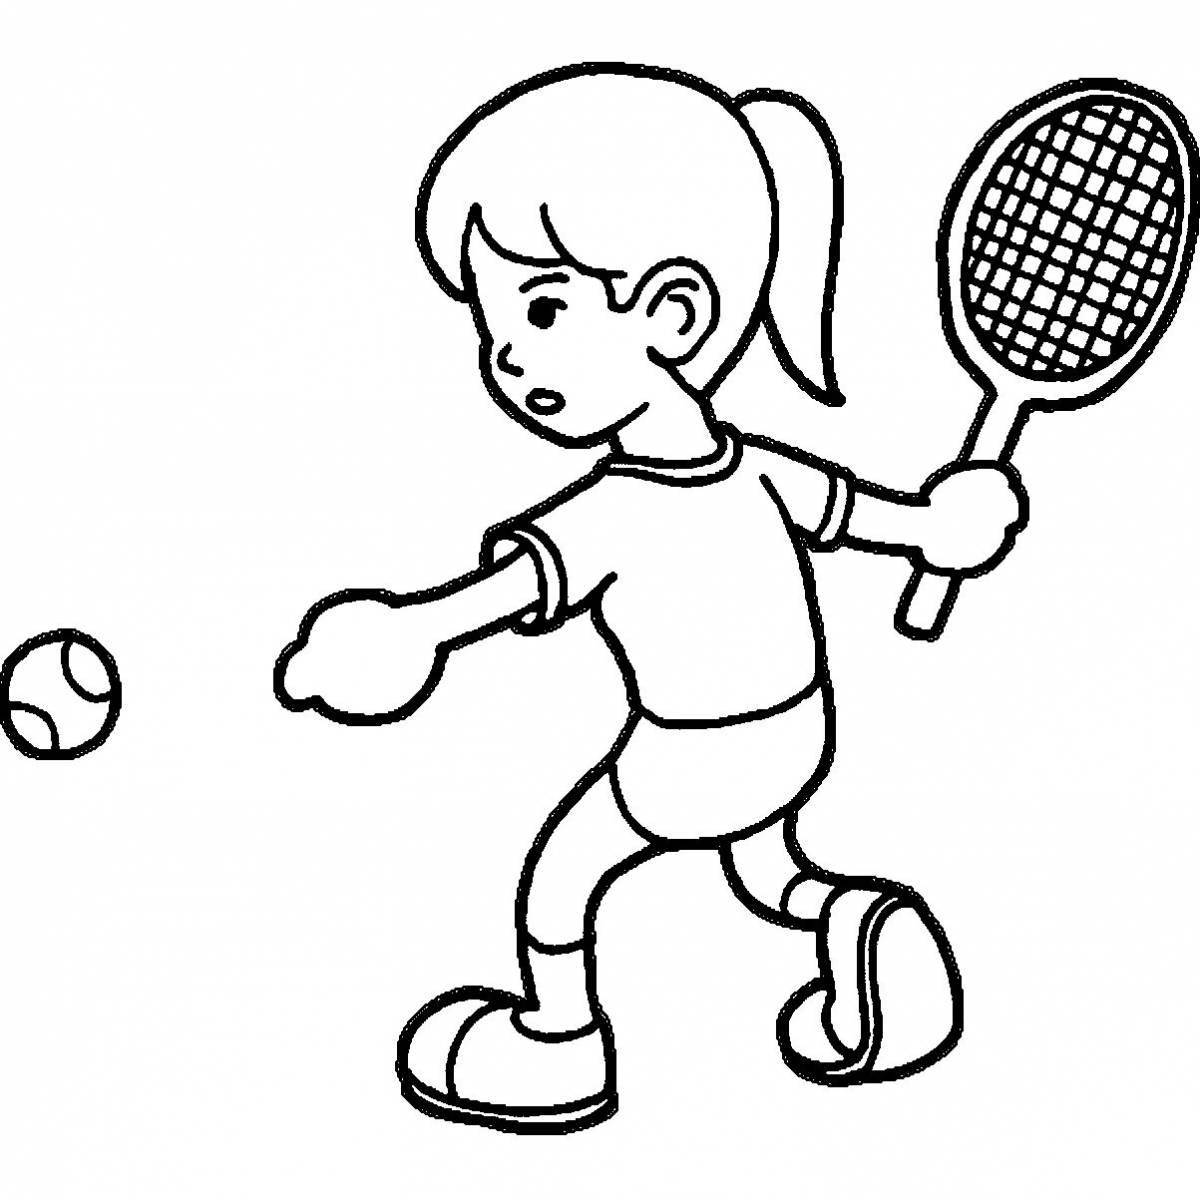 О спорте для дошкольников #8